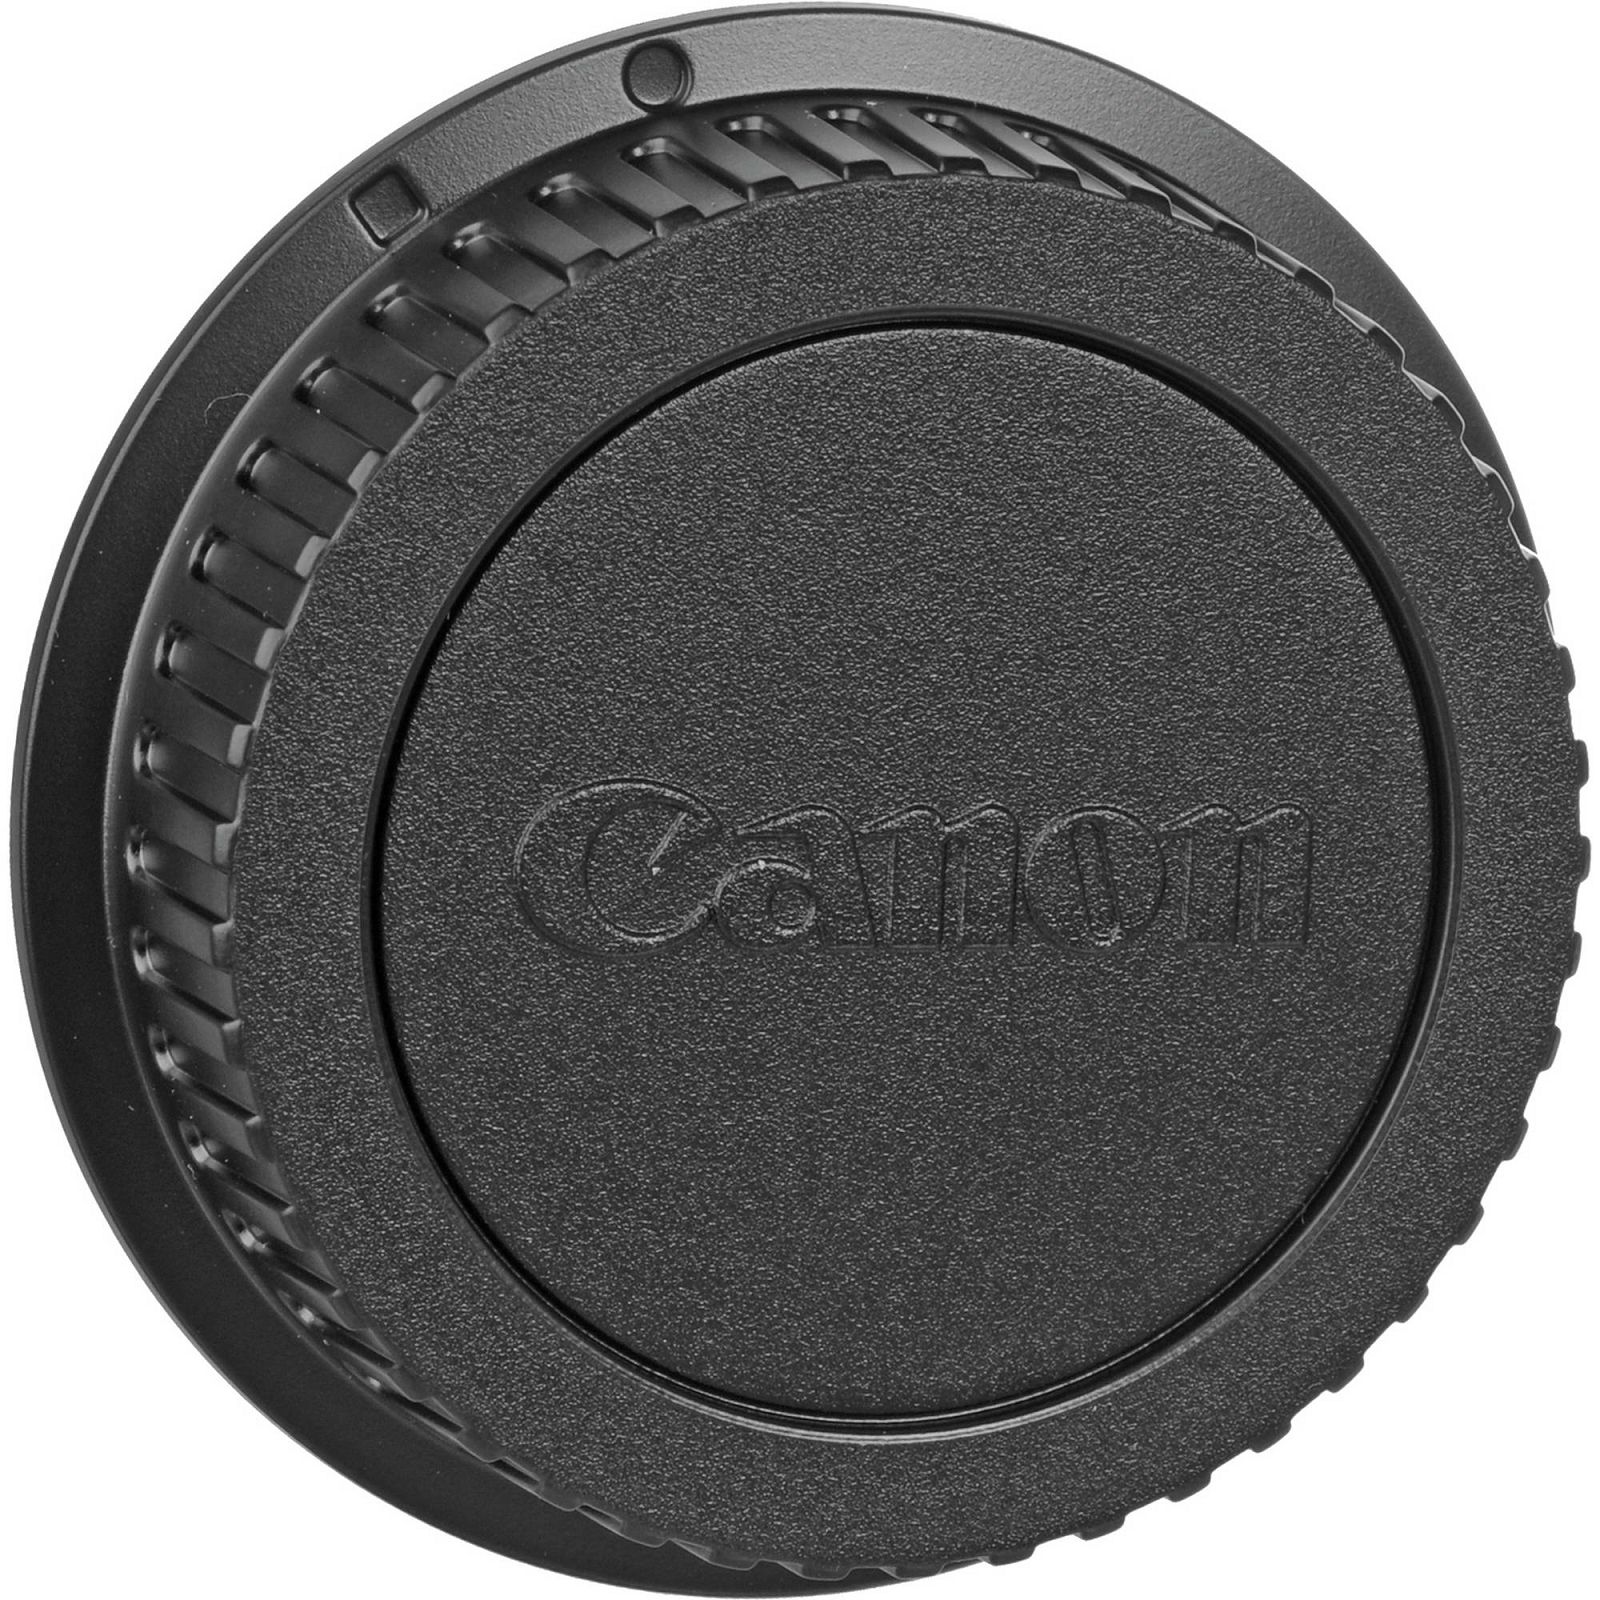 Canon EF 135mm f/2 L USM portretni telefoto objektiv prime lens 135 2.0 1:2,0 F2.0 F2 F/2.0 f/2L (2520A015AA)